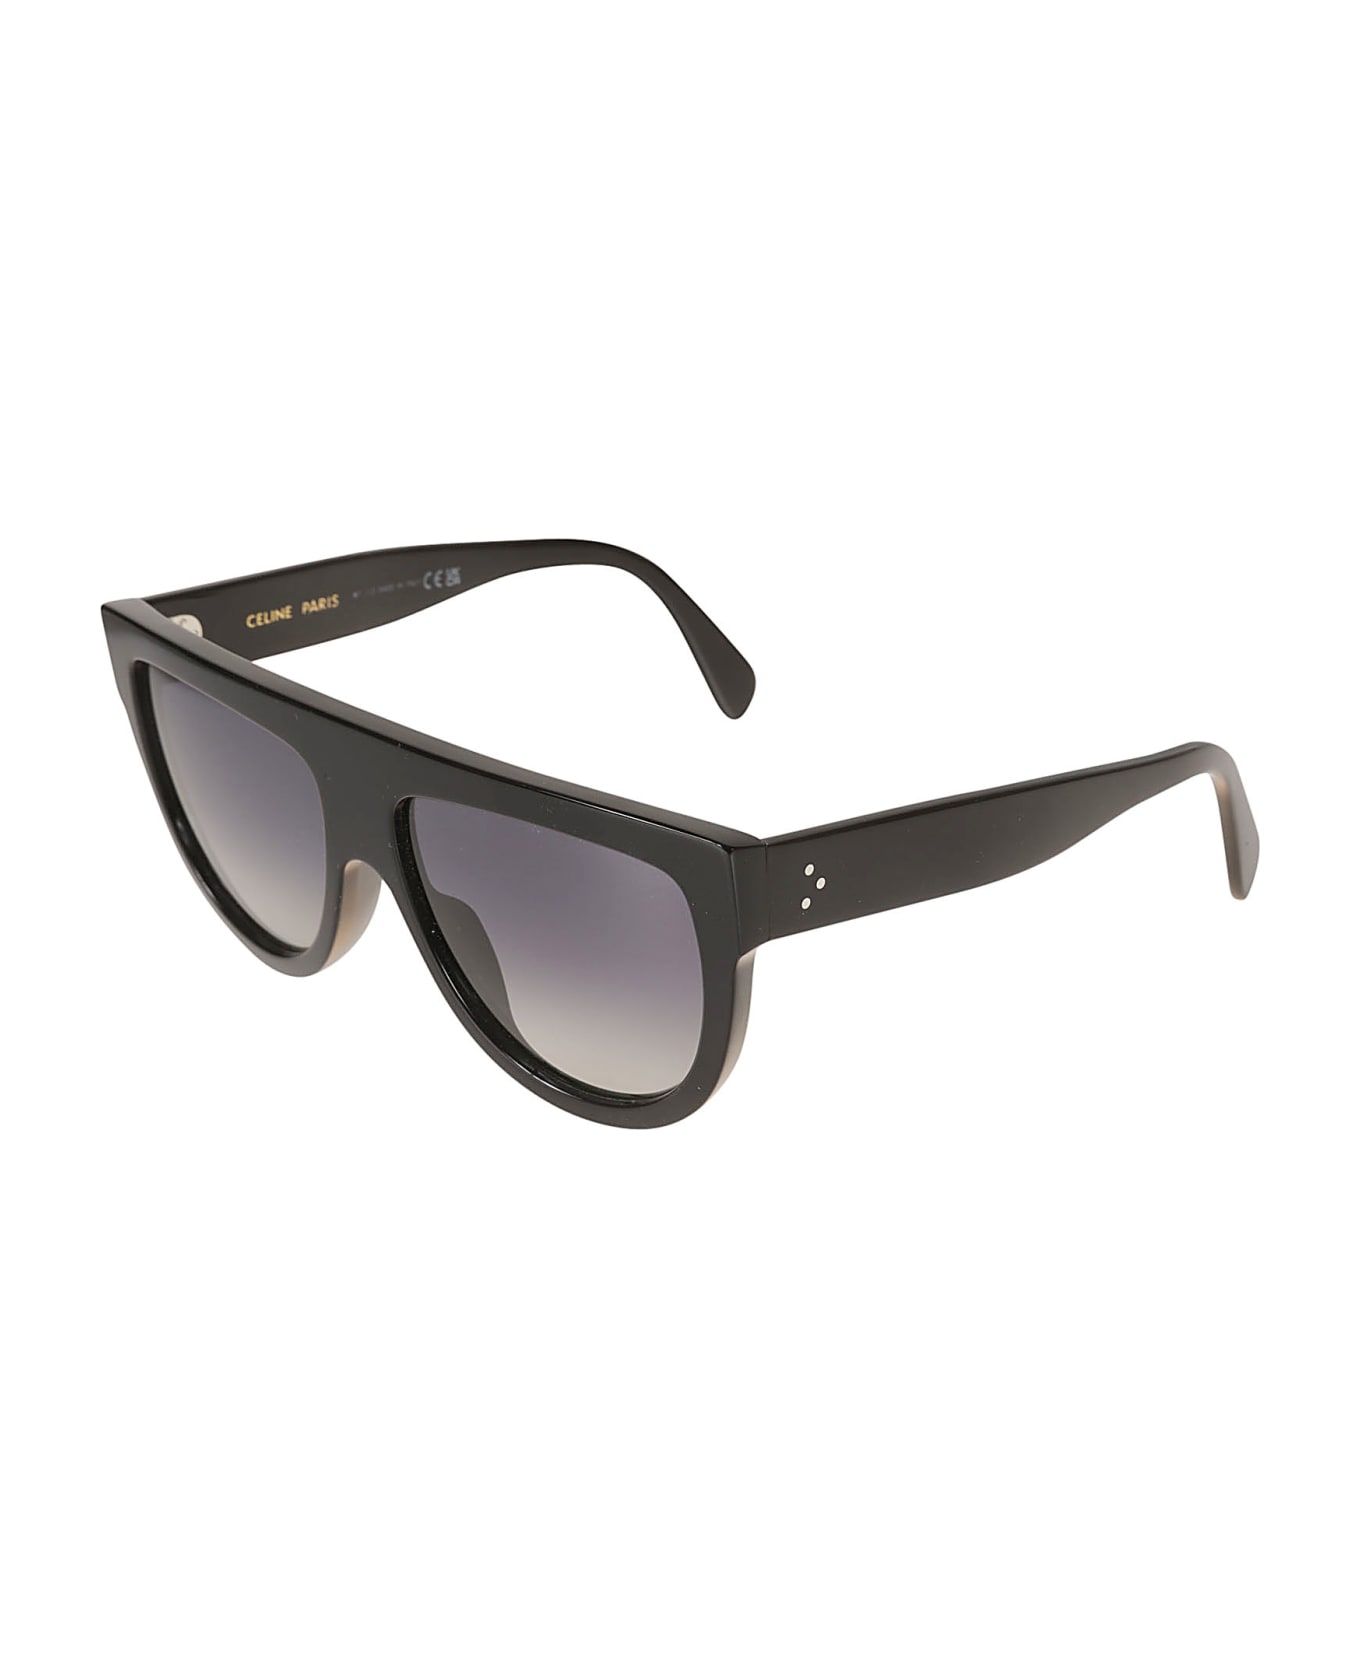 Celine Retro-squared Sunglasses - Black